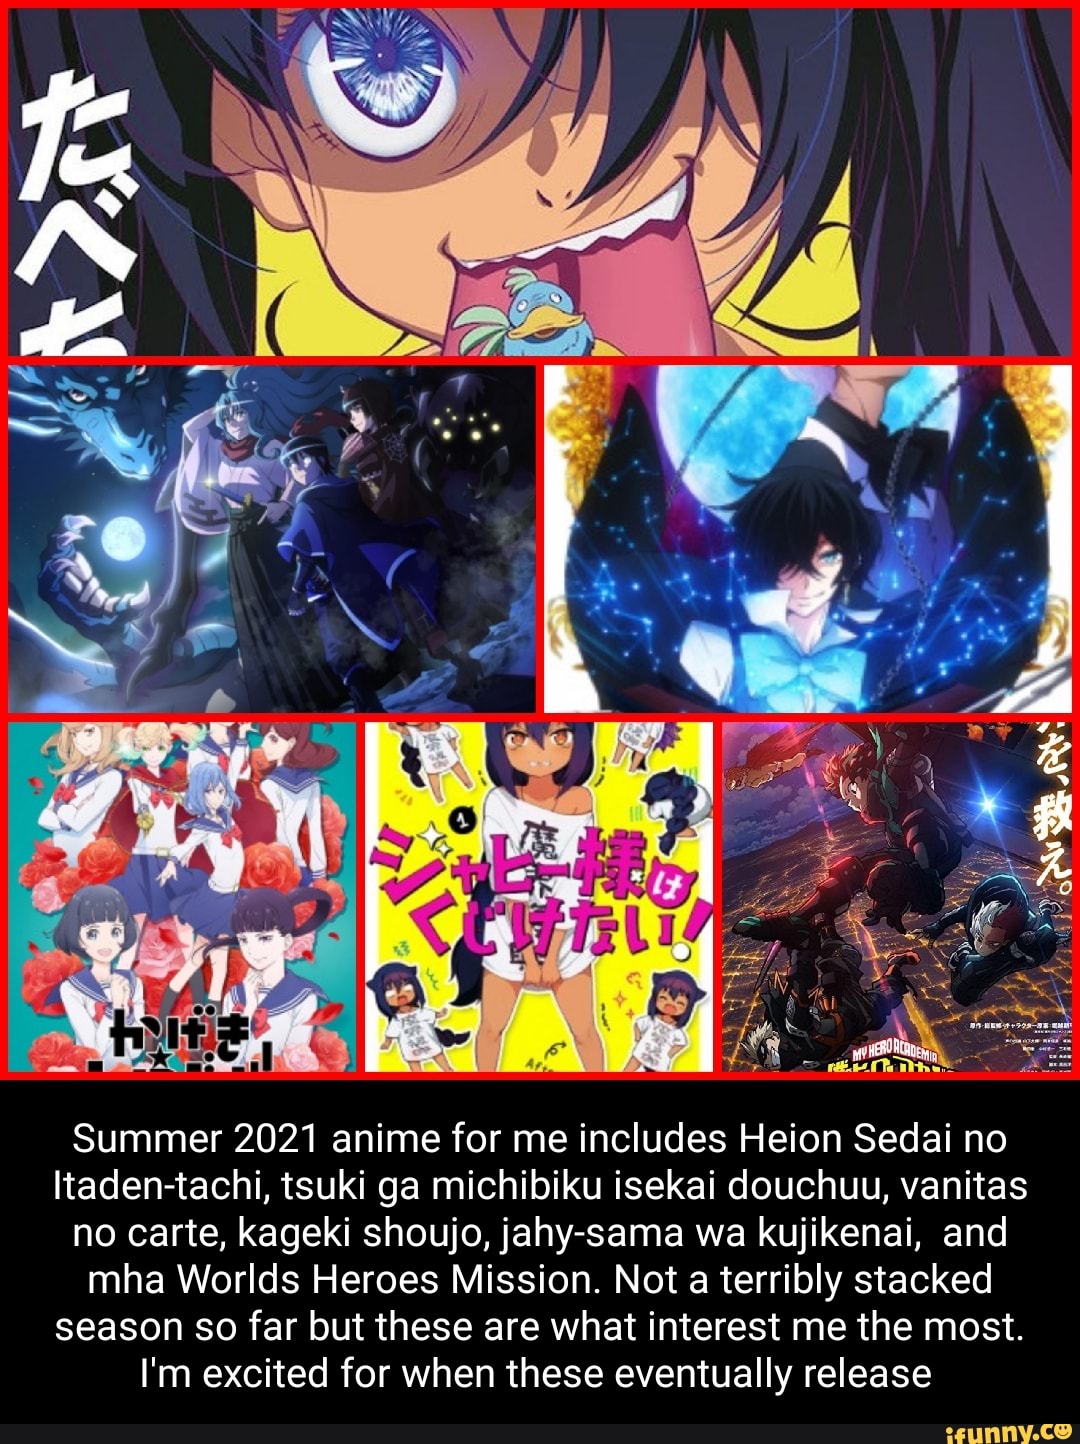 Kageki Shoujo!! - Anime Trending